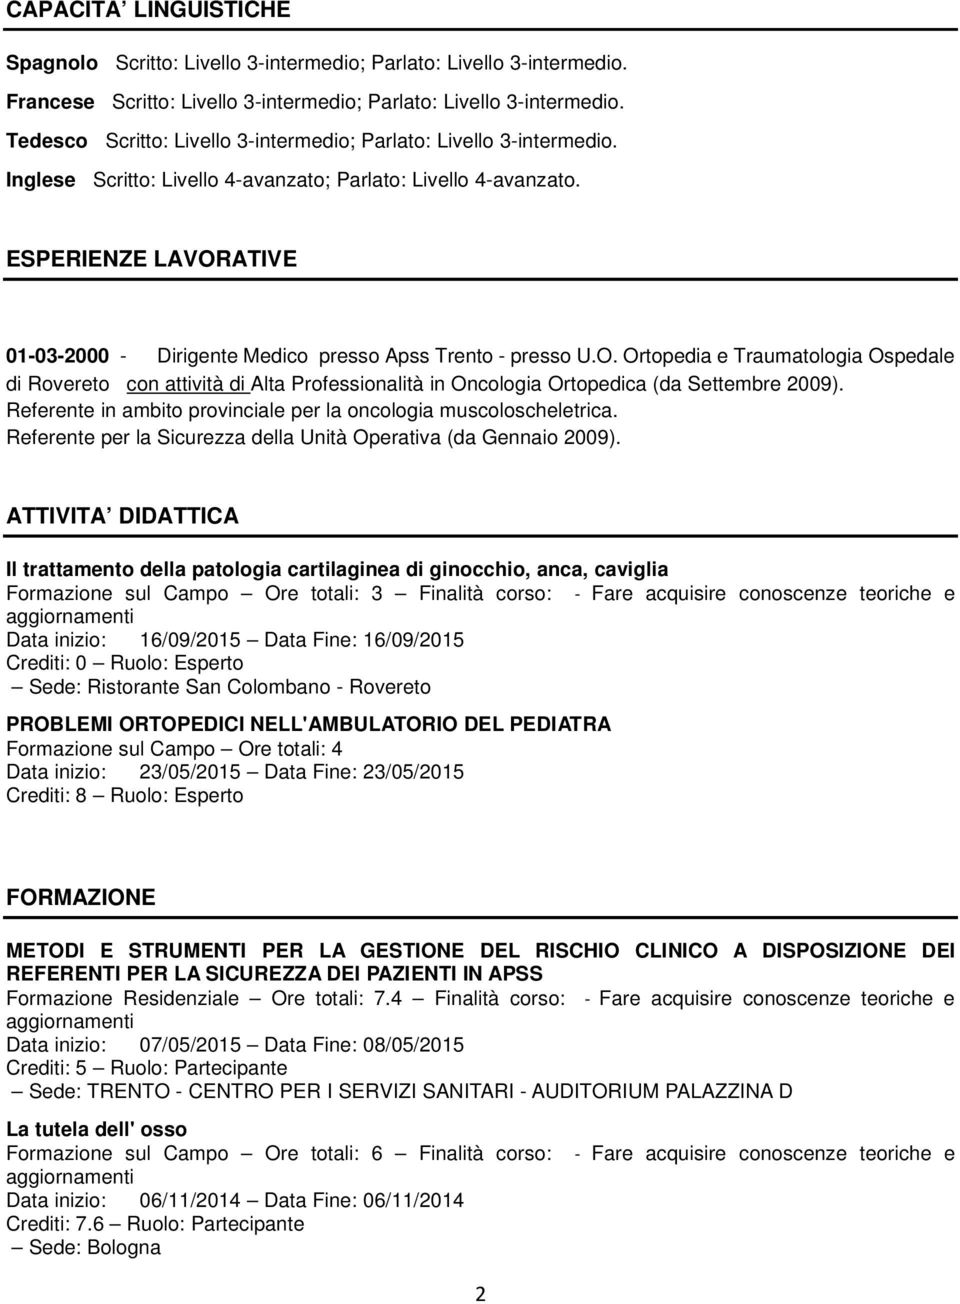 ESPERIENZE LAVORATIVE 01-03-2000 - Dirigente Medico presso Apss Trento - presso U.O. Ortopedia e Traumatologia Ospedale di Rovereto con attività di Alta Professionalità in Oncologia Ortopedica (da Settembre 2009).